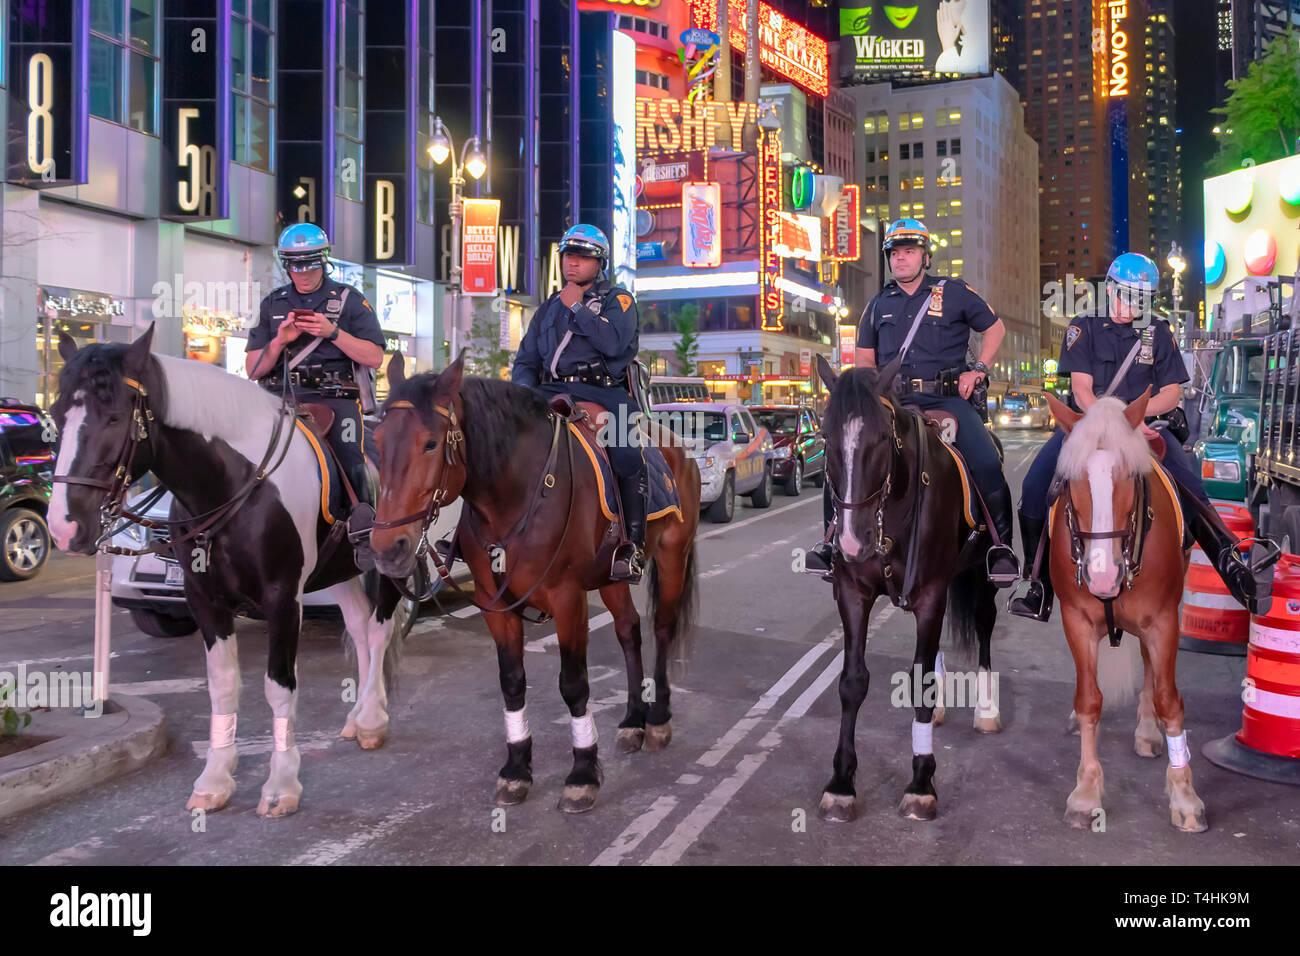 La città di New York, Stati Uniti d'America - 7 Giugno 2017: NYPD funzionari di polizia a cavallo in Times Square a New York City. Polizia montata pattugliano la notte in tempi Squa Foto Stock